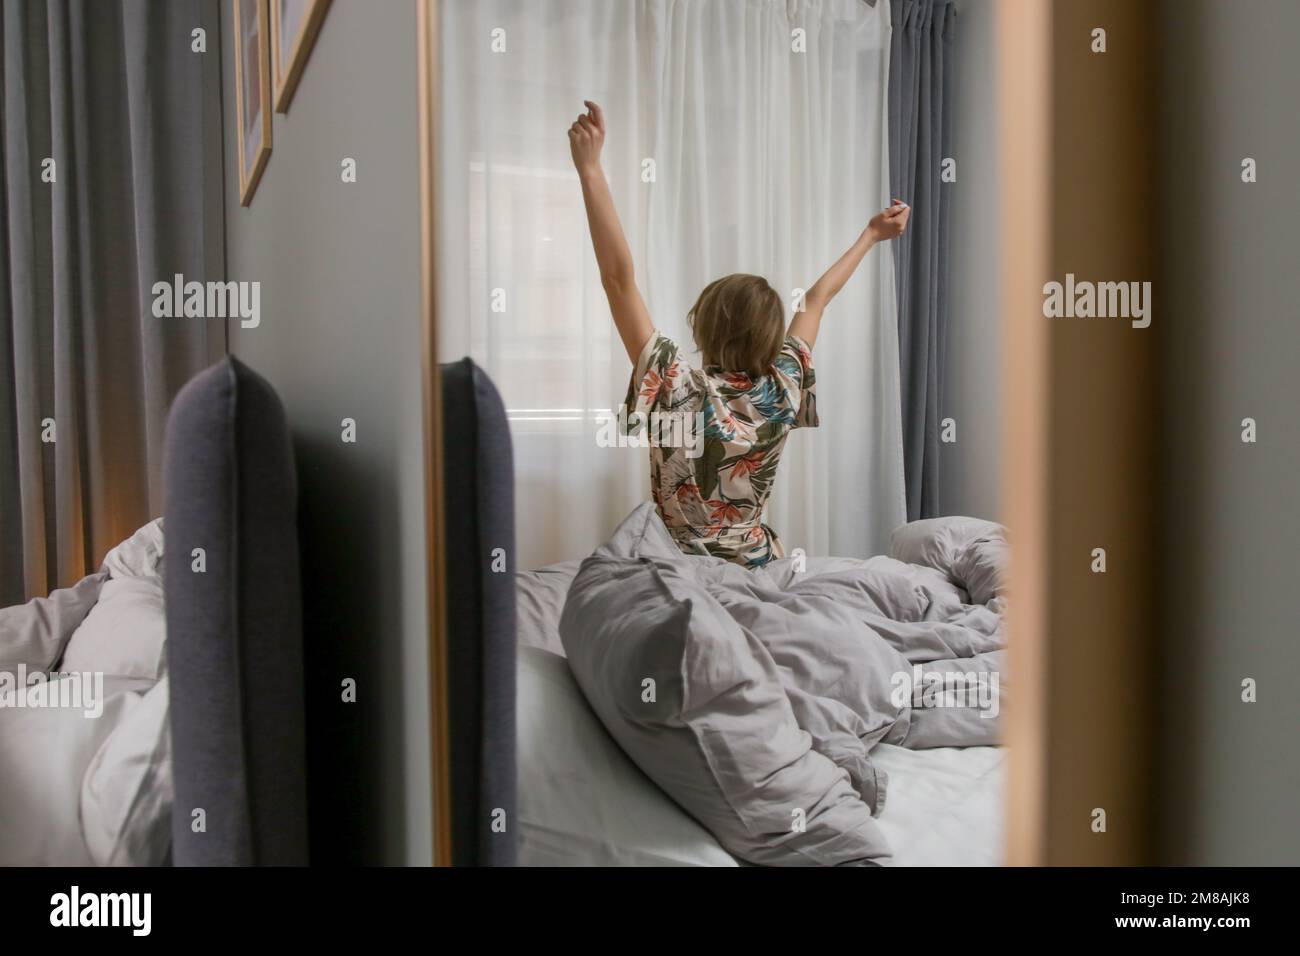 Beweglichkeit des Oberkörpers, wunderschöne junge Frau, die sich nach dem Aufwachen auf dem Bett streckt Stockfoto